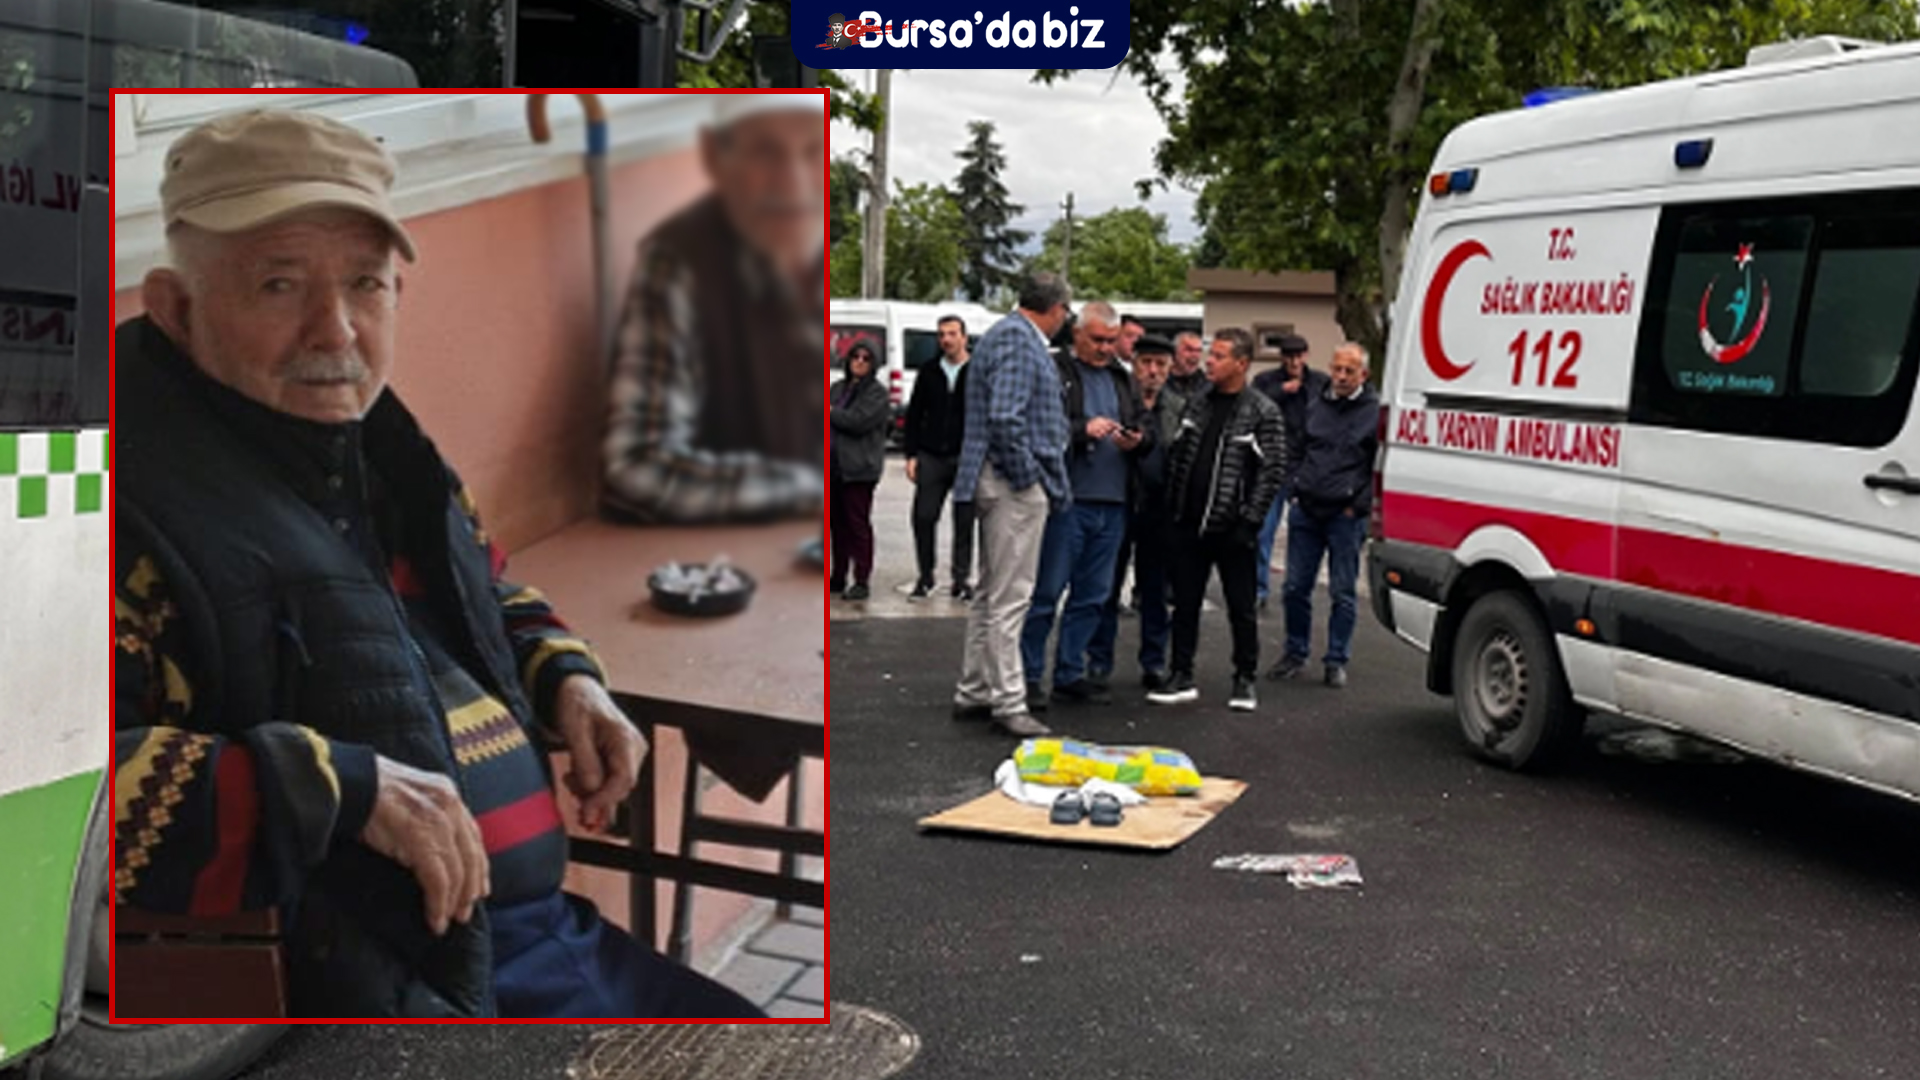 Bursa'da Otobüsün Çarptığı Yakup Sevinç Yaşamını Yitirdi (64)